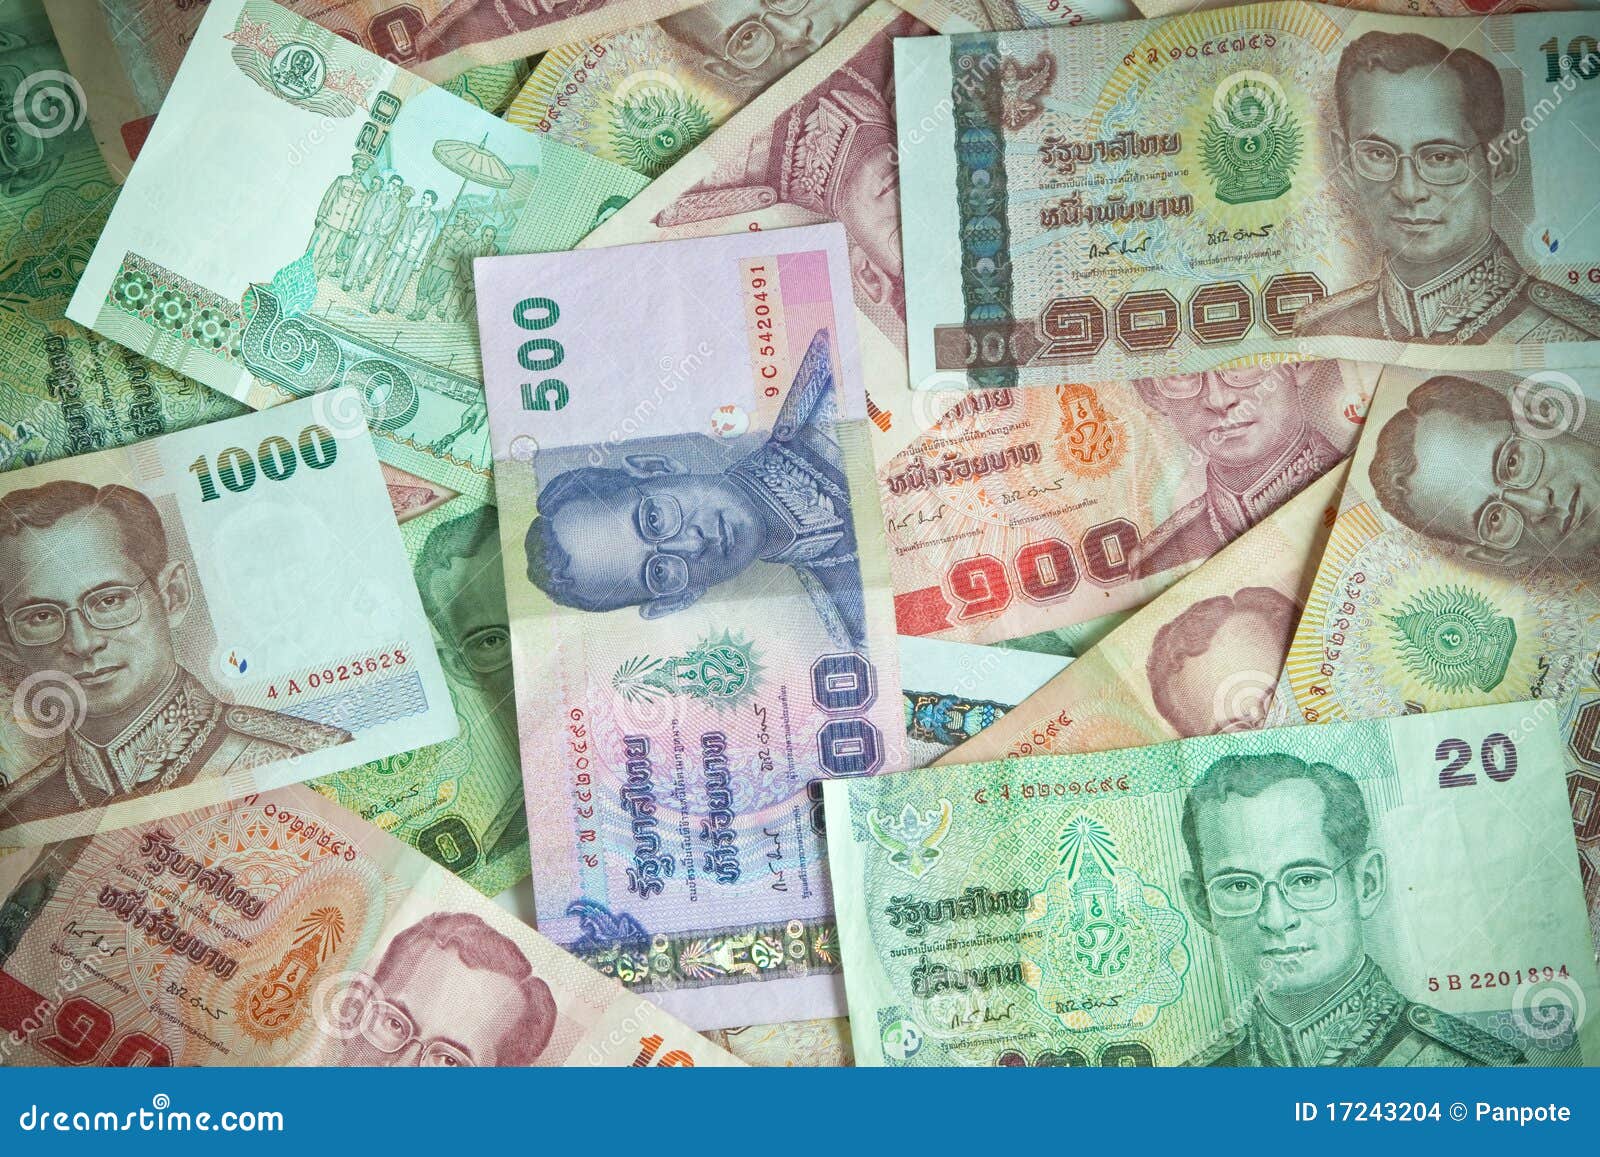 泰国钱币900换人民币,泰铢900元的照片 - 伤感说说吧